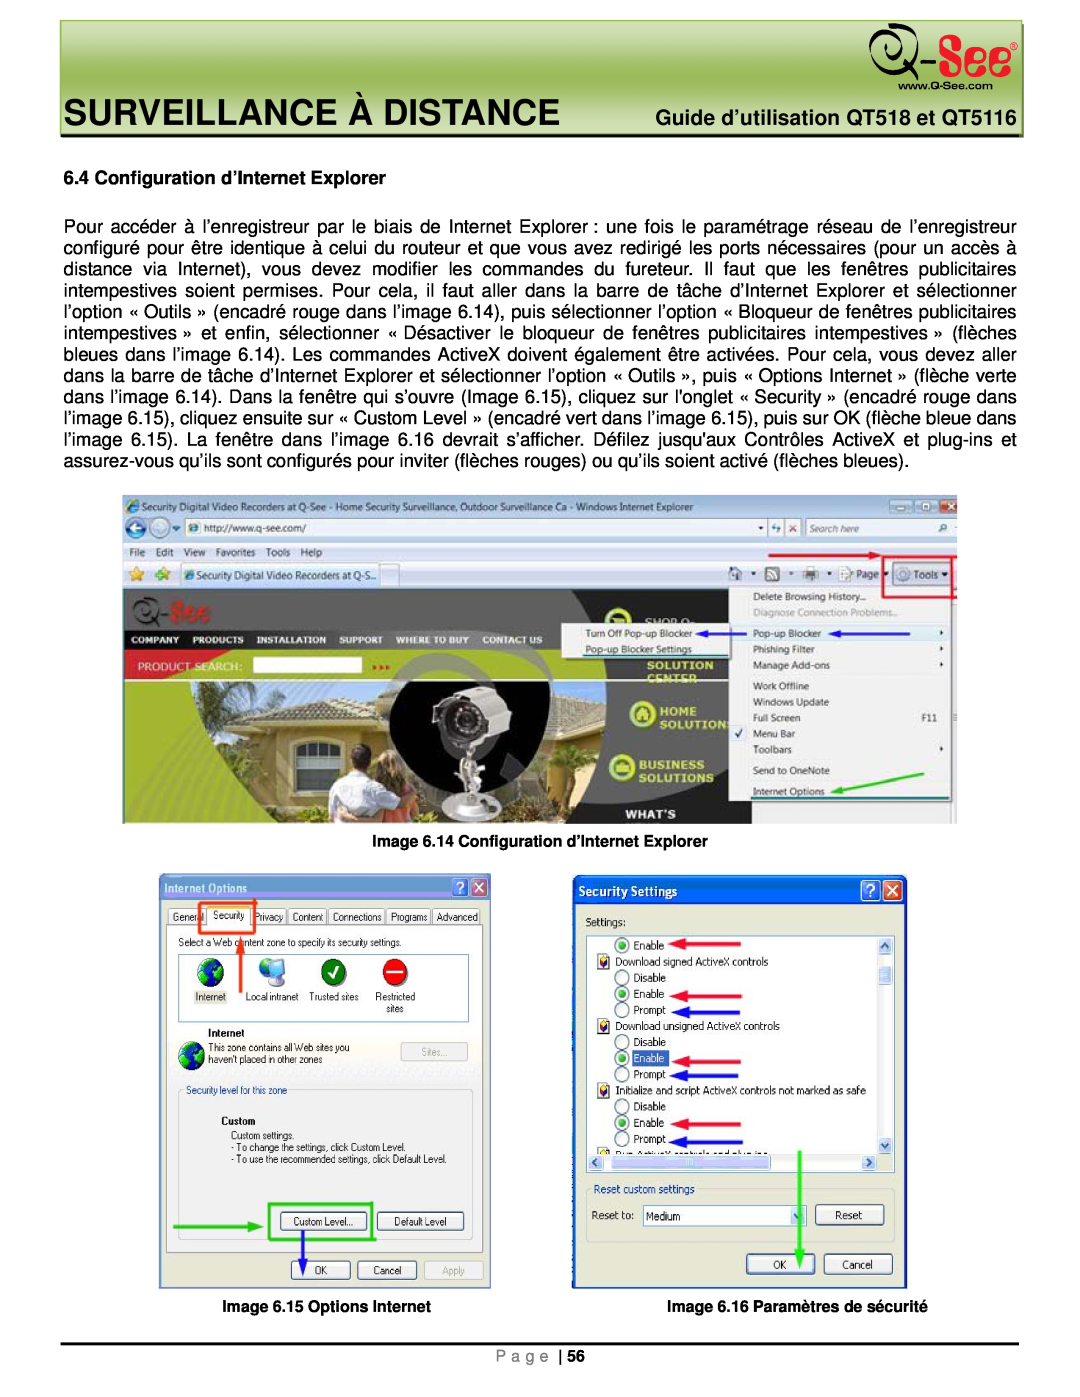 Q-See manual Surveillance À Distance, Guide d’utilisation QT518 et QT5116, Configuration d’Internet Explorer 